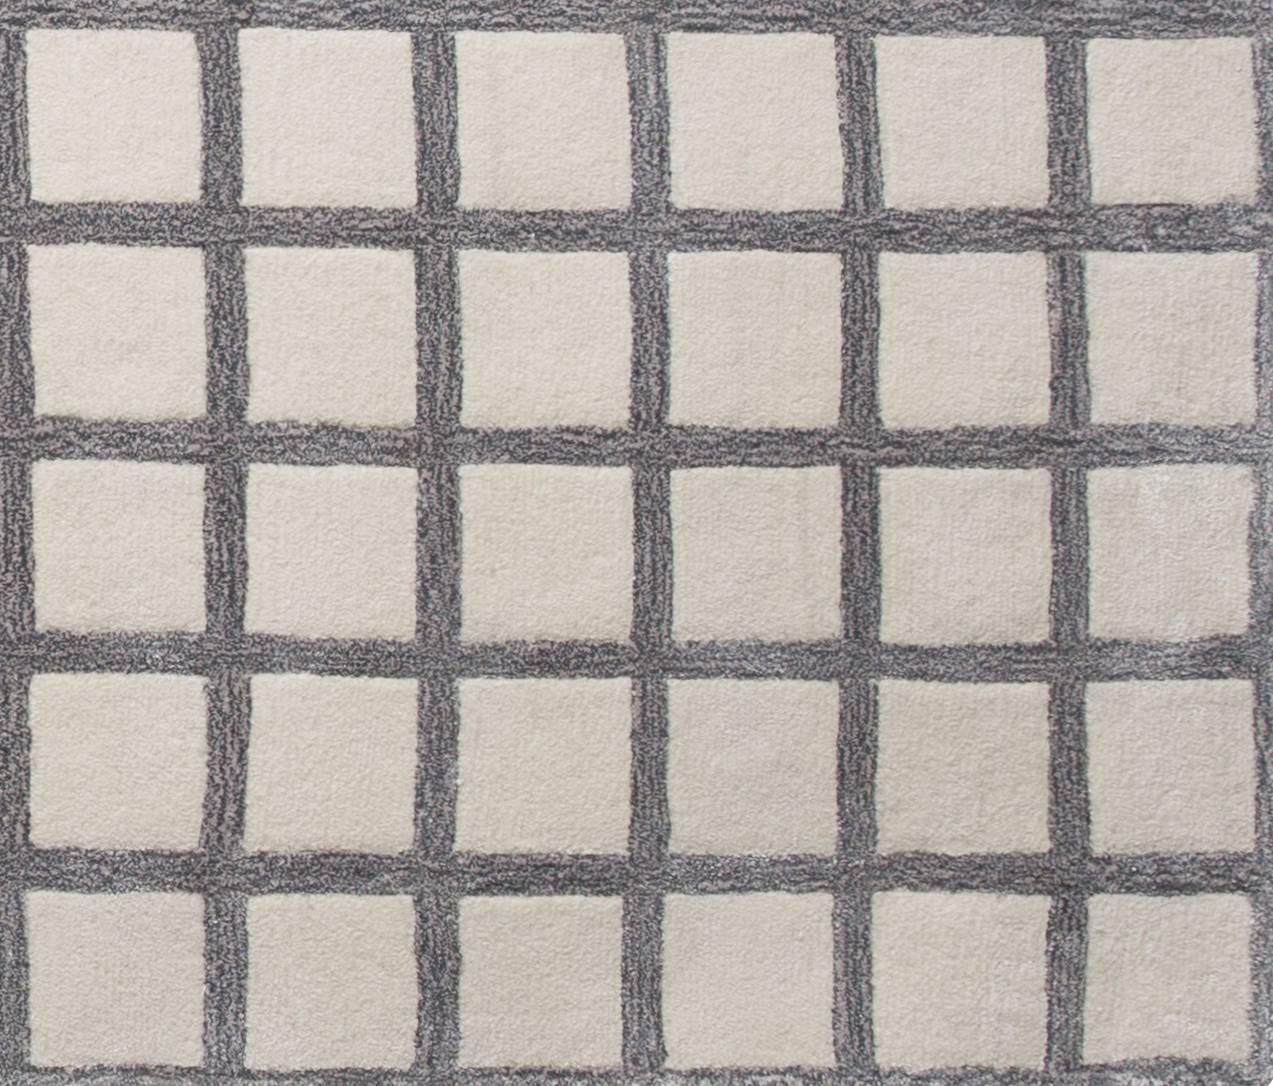 Maschi-Teppich mit dem charakteristischen Gitterdruck von pieces. Unter den Füßen, aber im Gesicht: Teppiche, die ein Statement setzen. Handgetufteter Teppich aus einem Woll-Viskose-Gemisch. Entworfen von Pieces.

Kundenspezifische Größen sind